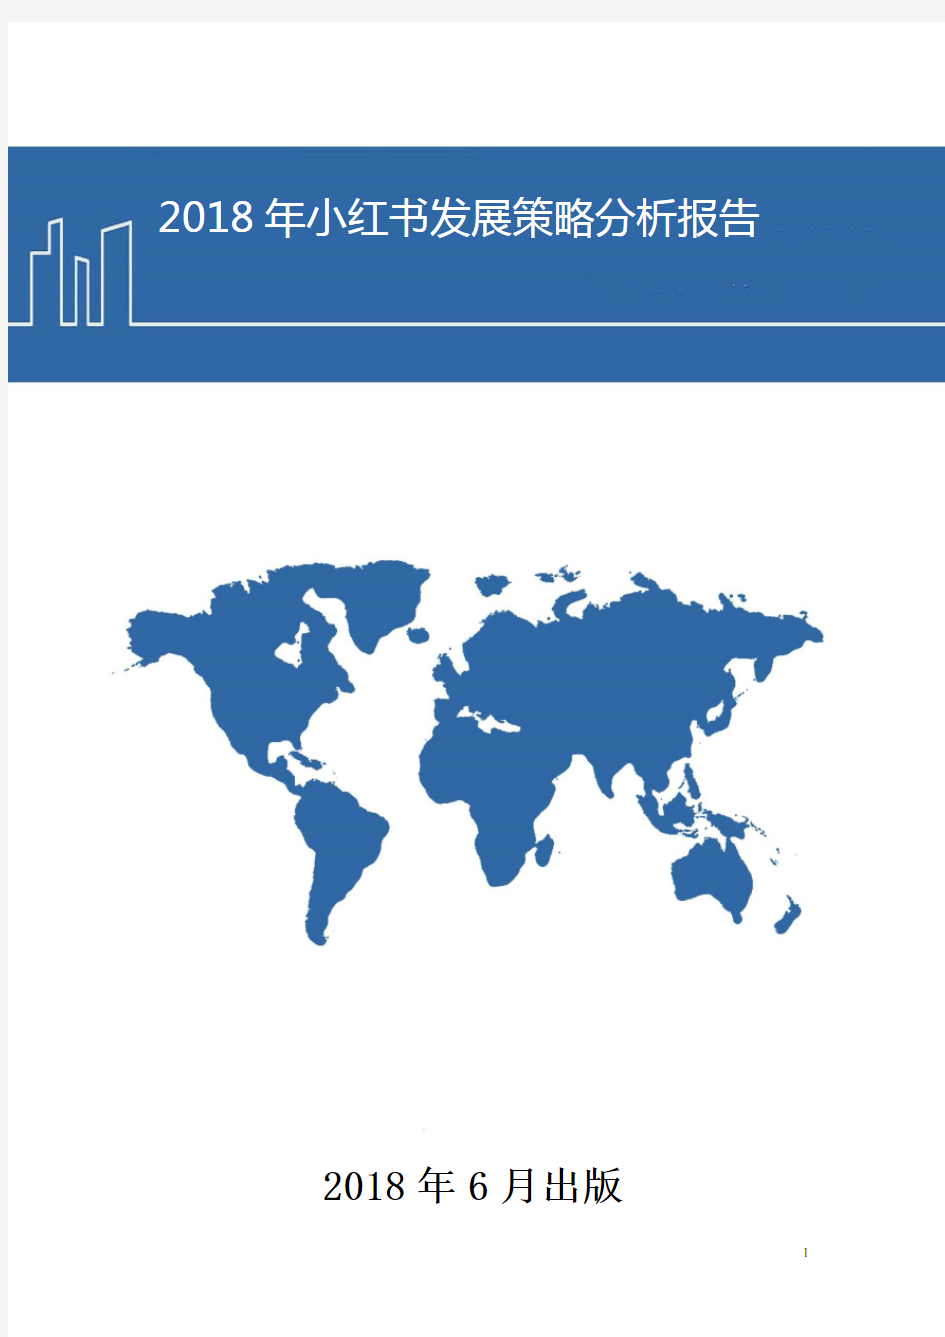 2018年小红书发展策略分析报告